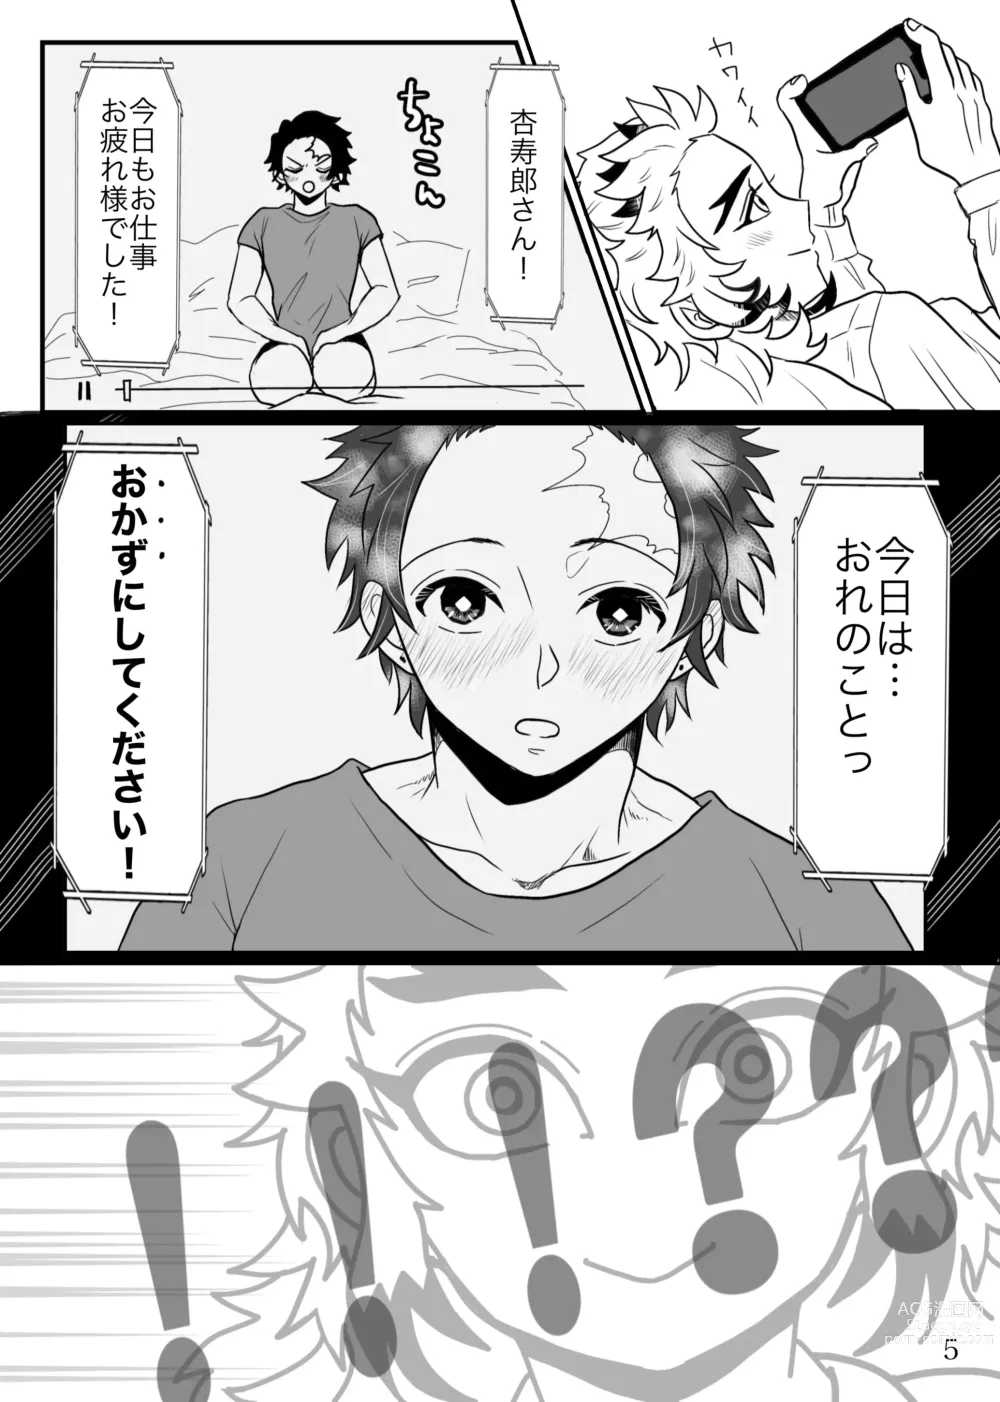 Page 6 of doujinshi Shounen, Sensei to Yonde Kurenai ka